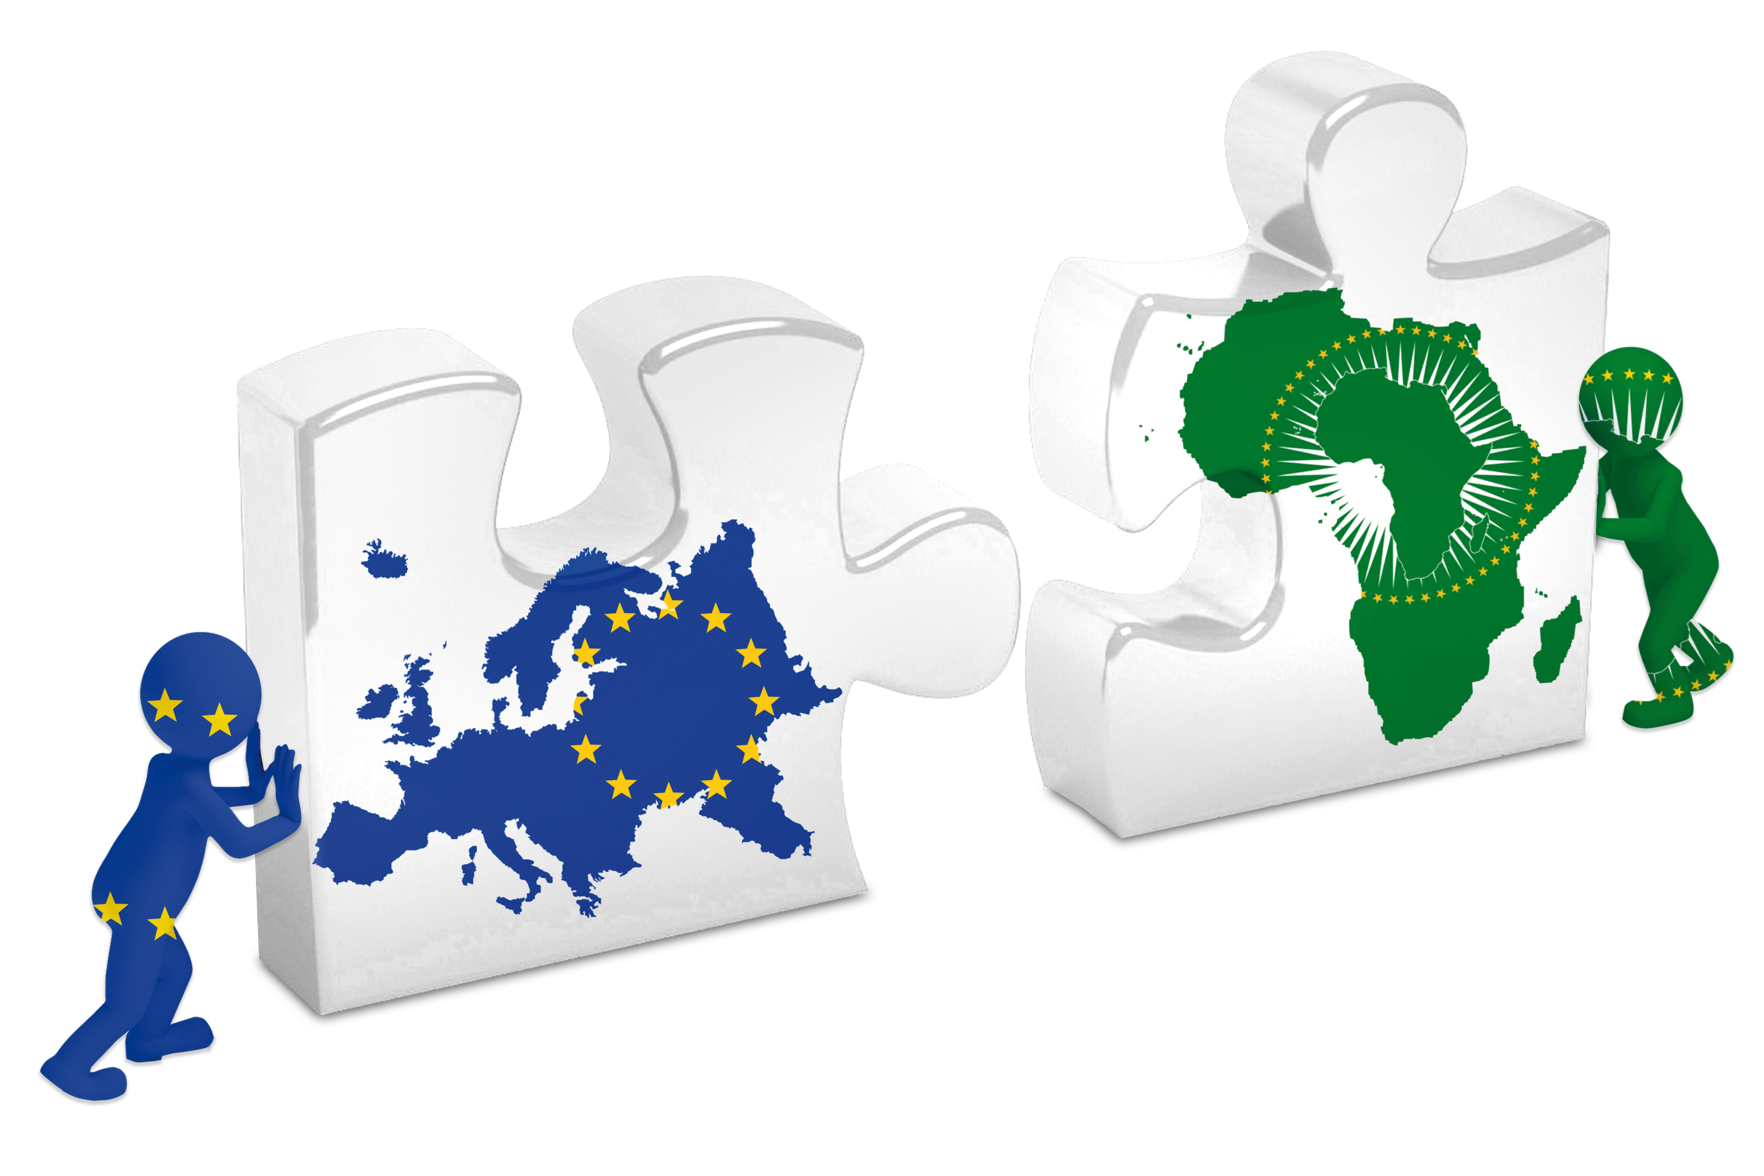 Symbolbild zwei einzelne Puzzleteile. Ein Puzzleteil mit dem Kontinent Afrika und eines mit dem Kontinent Europa. Sie werden von zwei Männchen zueinander geschoben, sodass sie passen würden.